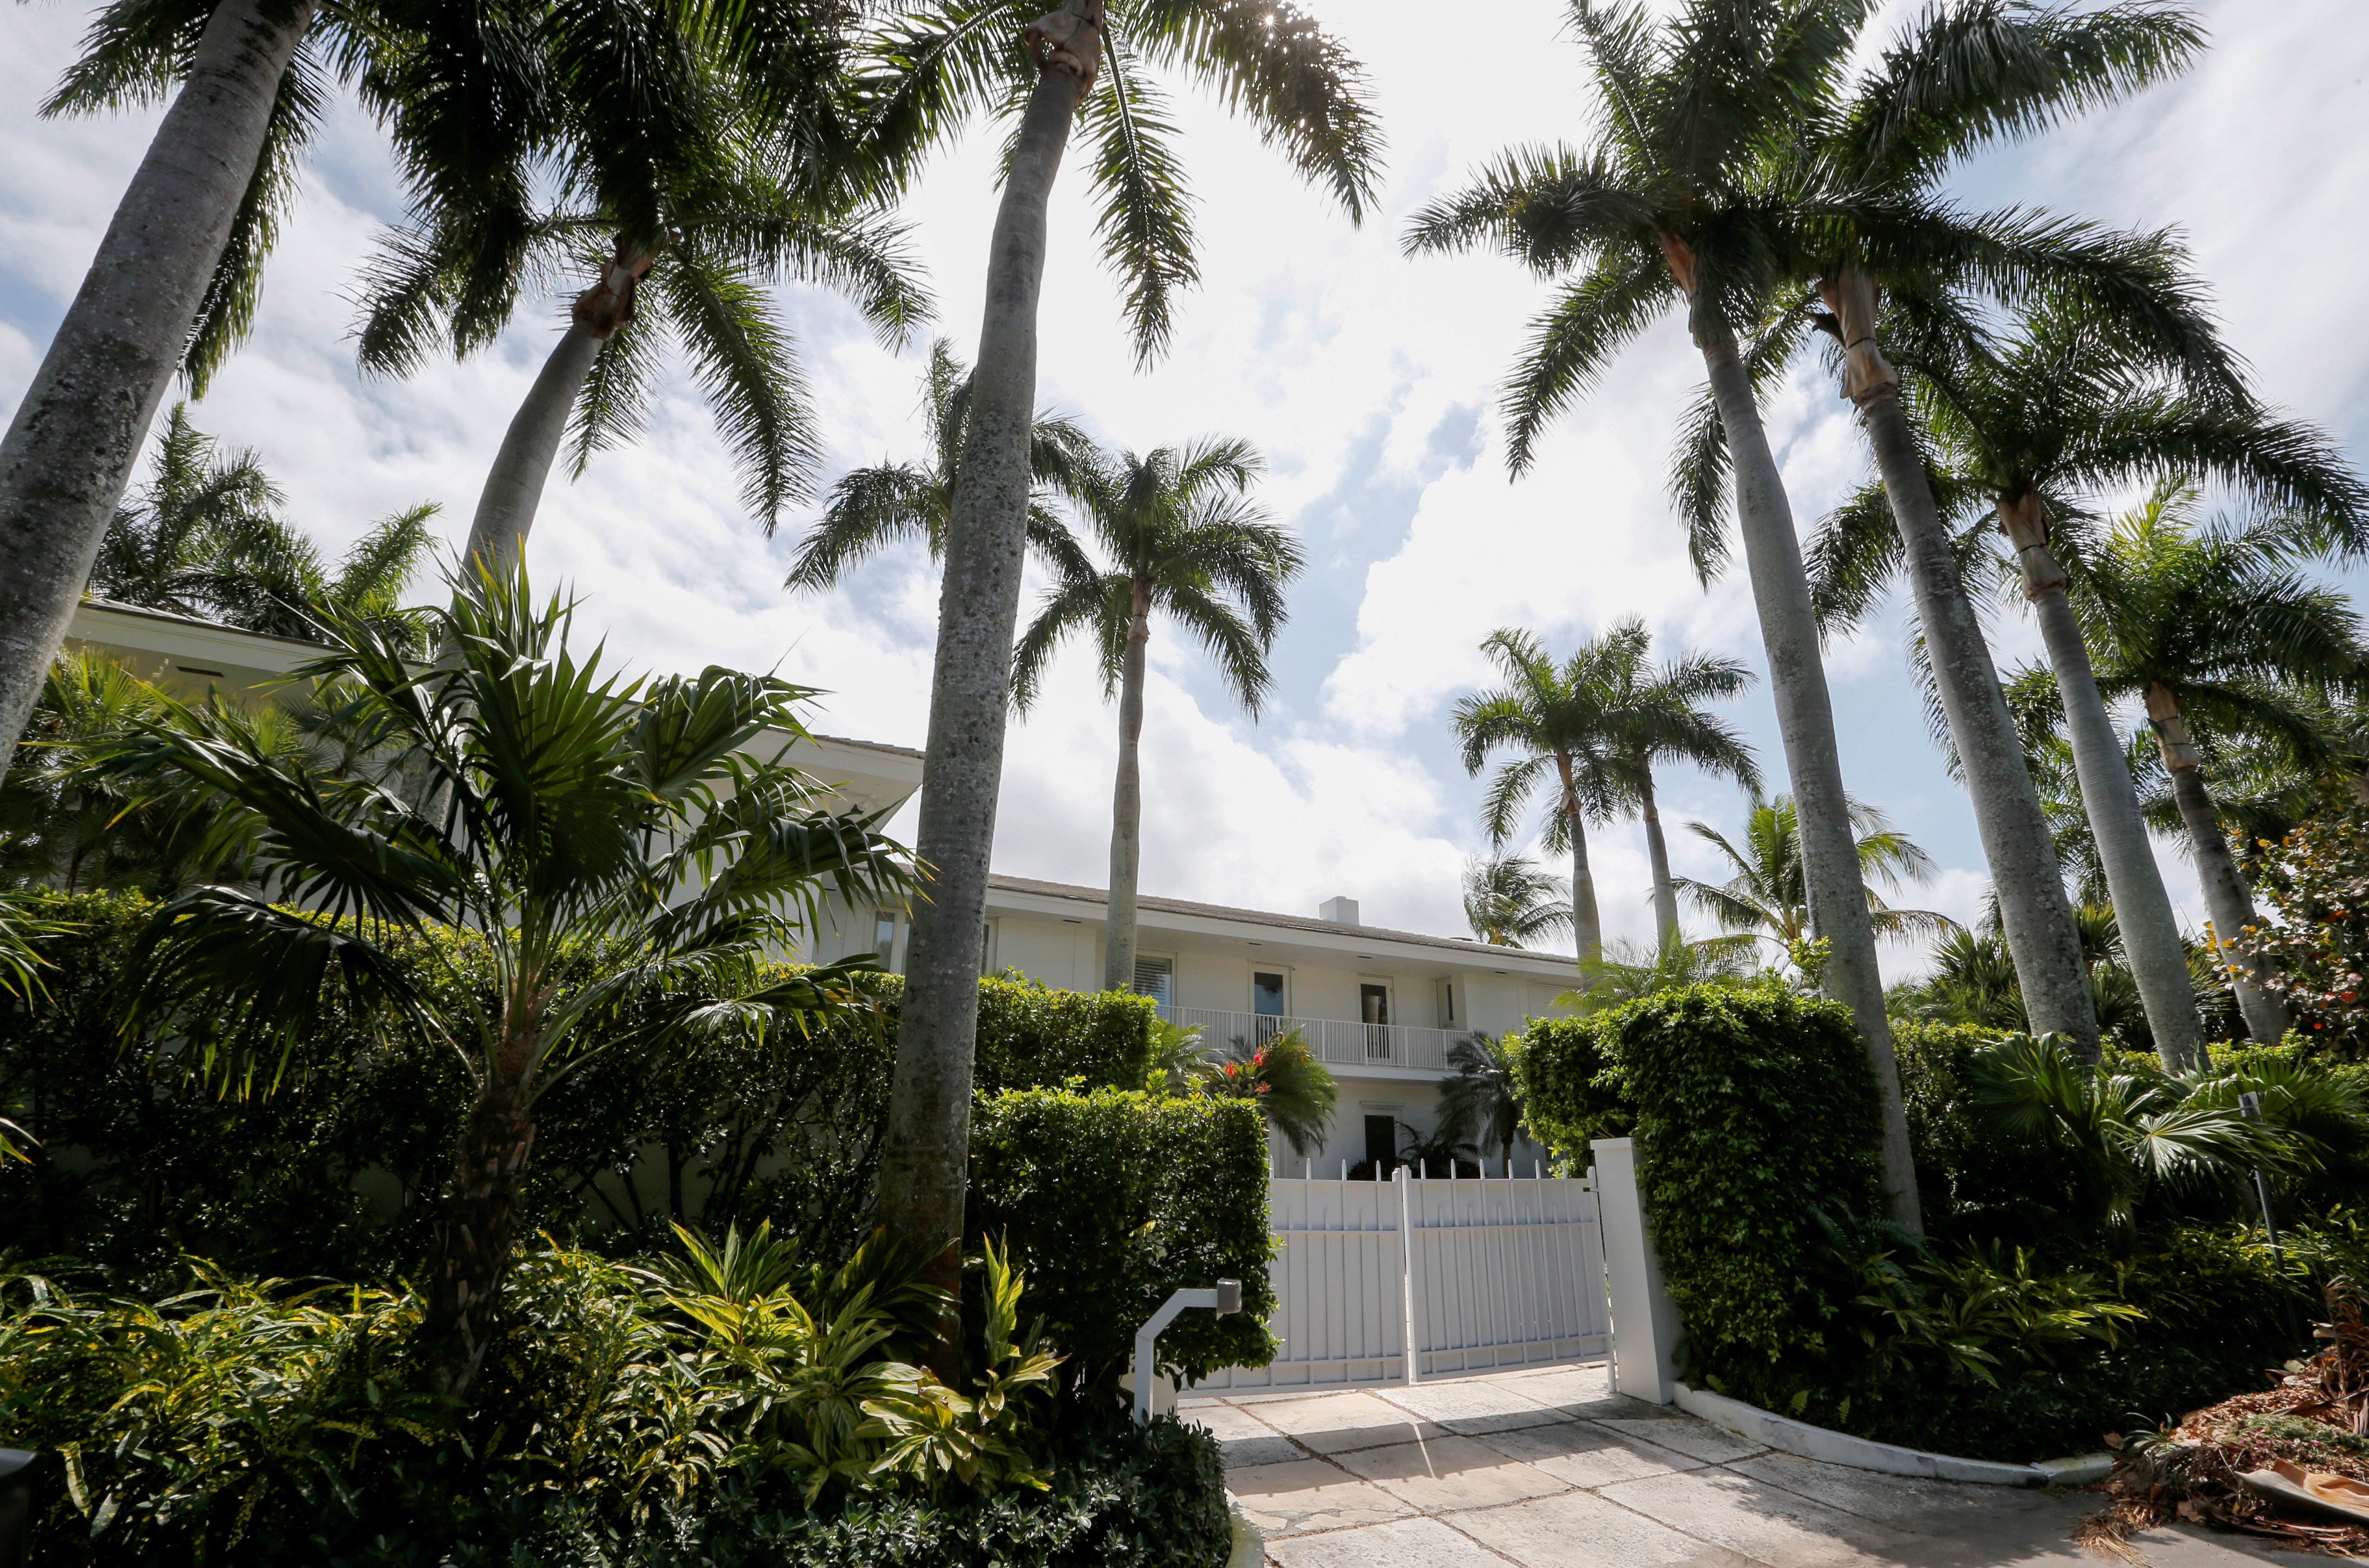 La propiedad de Florida que el fallecido financista utilizó para agredir sexualmente a sus víctimas fue adquirida por 20 millones de dólares por un desarrollador inmobiliario (Reuters)